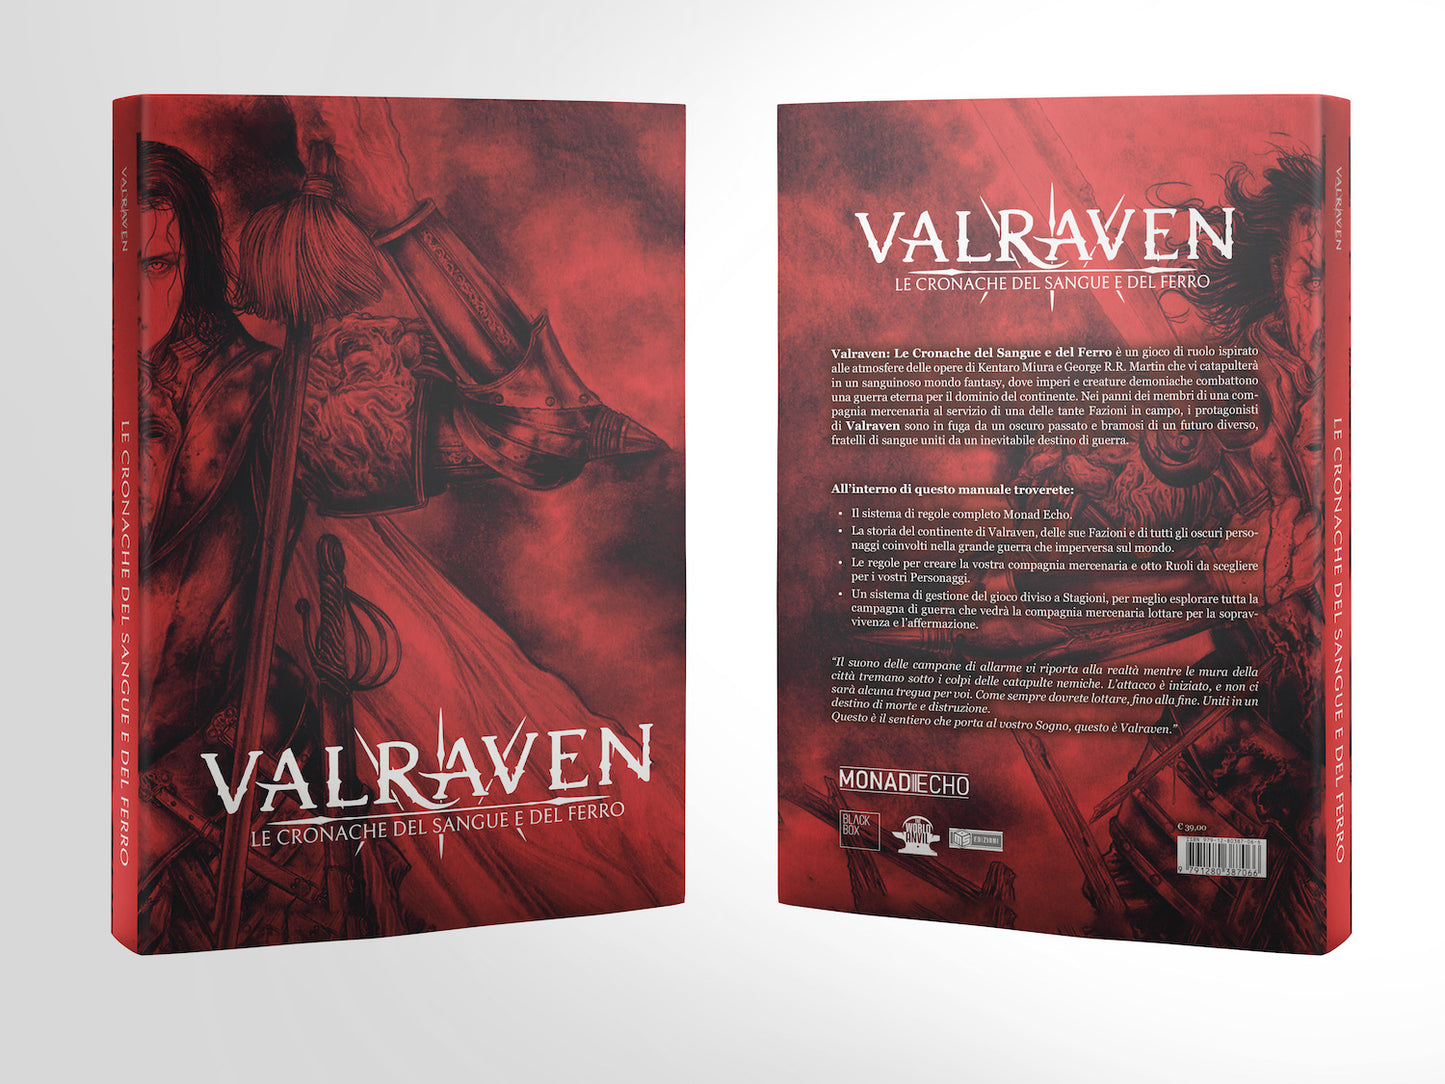 Valraven: Le Cronache del Sangue e del Ferro Core Book - Softcover 🇮🇹